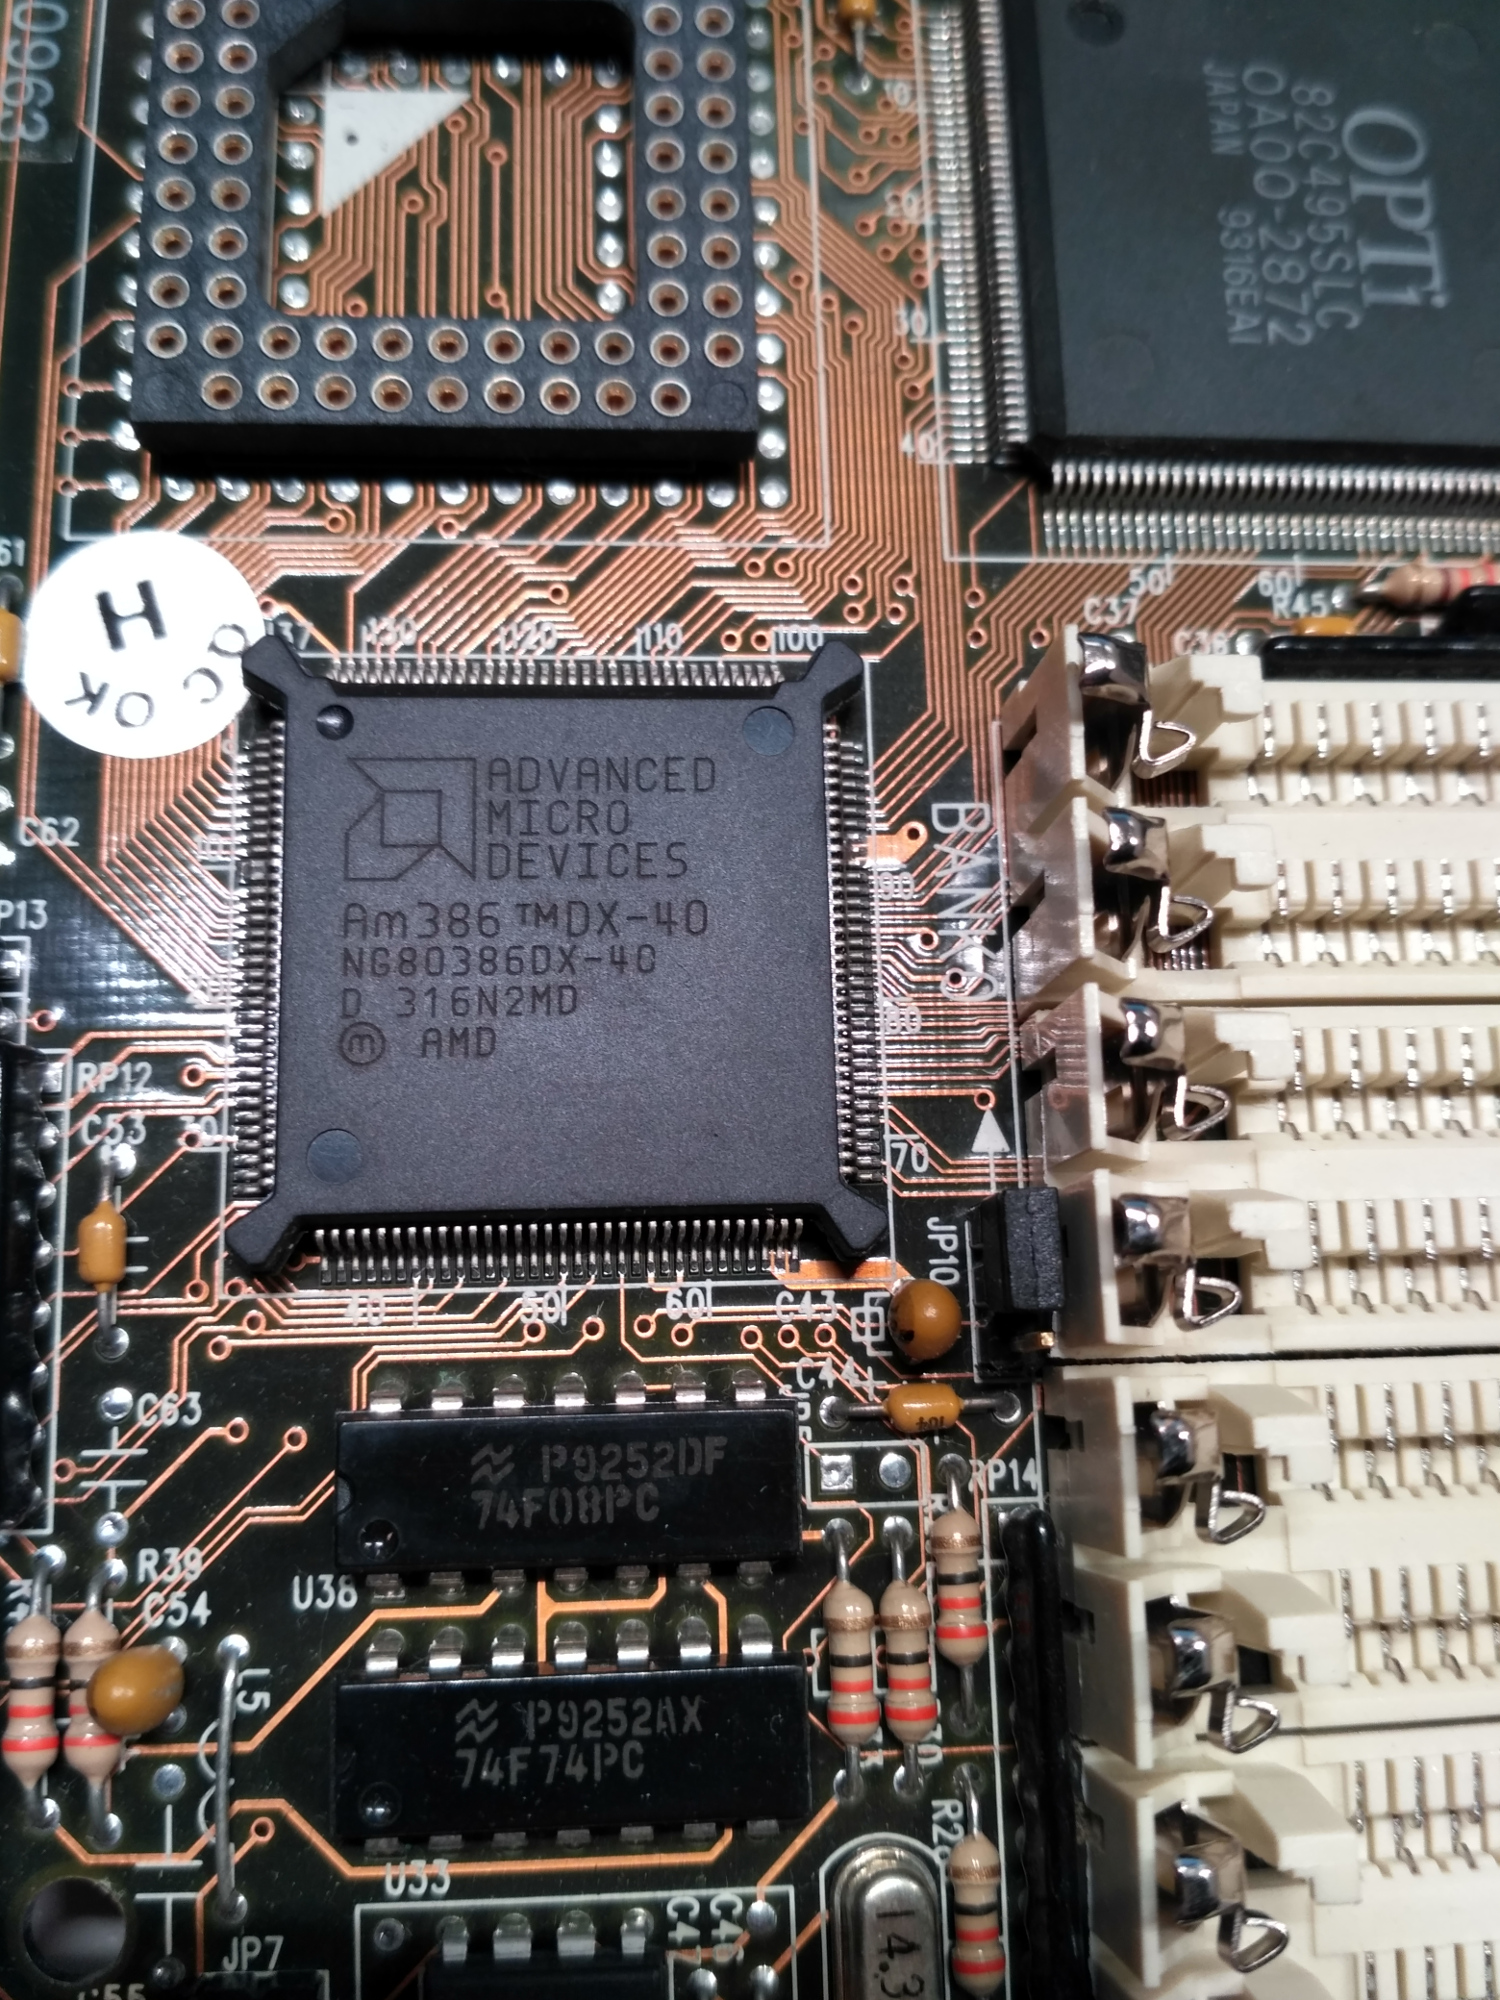 AMD_Am386_DX-40.jpg